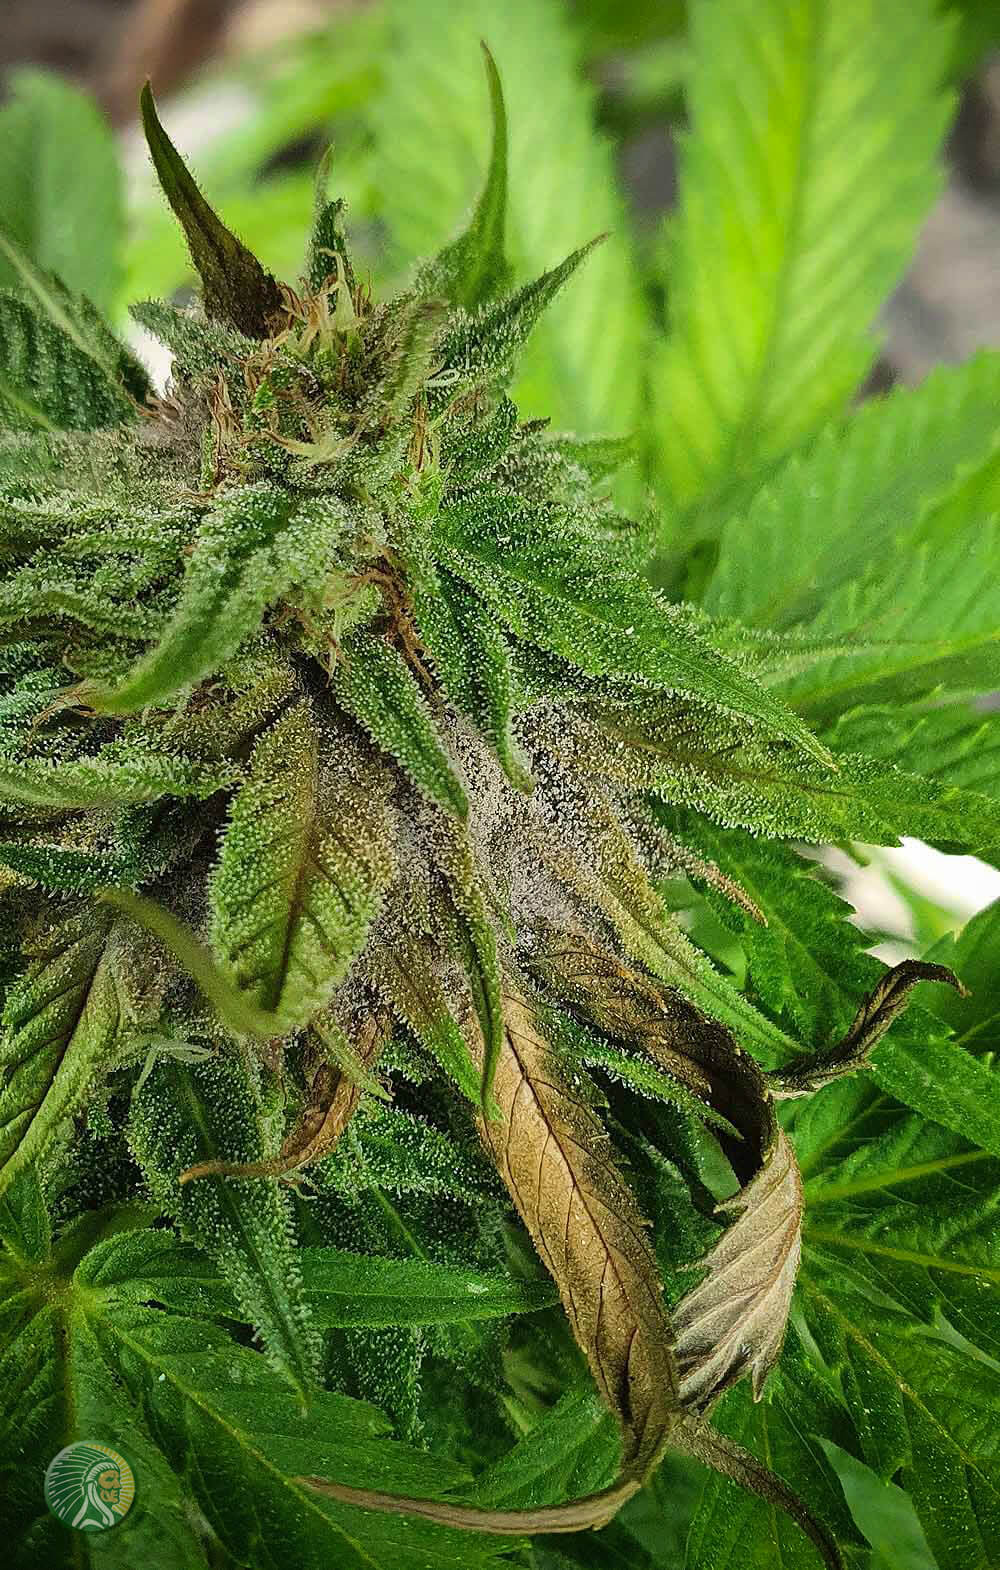 Moisissure grise sur une fleur de cannabis